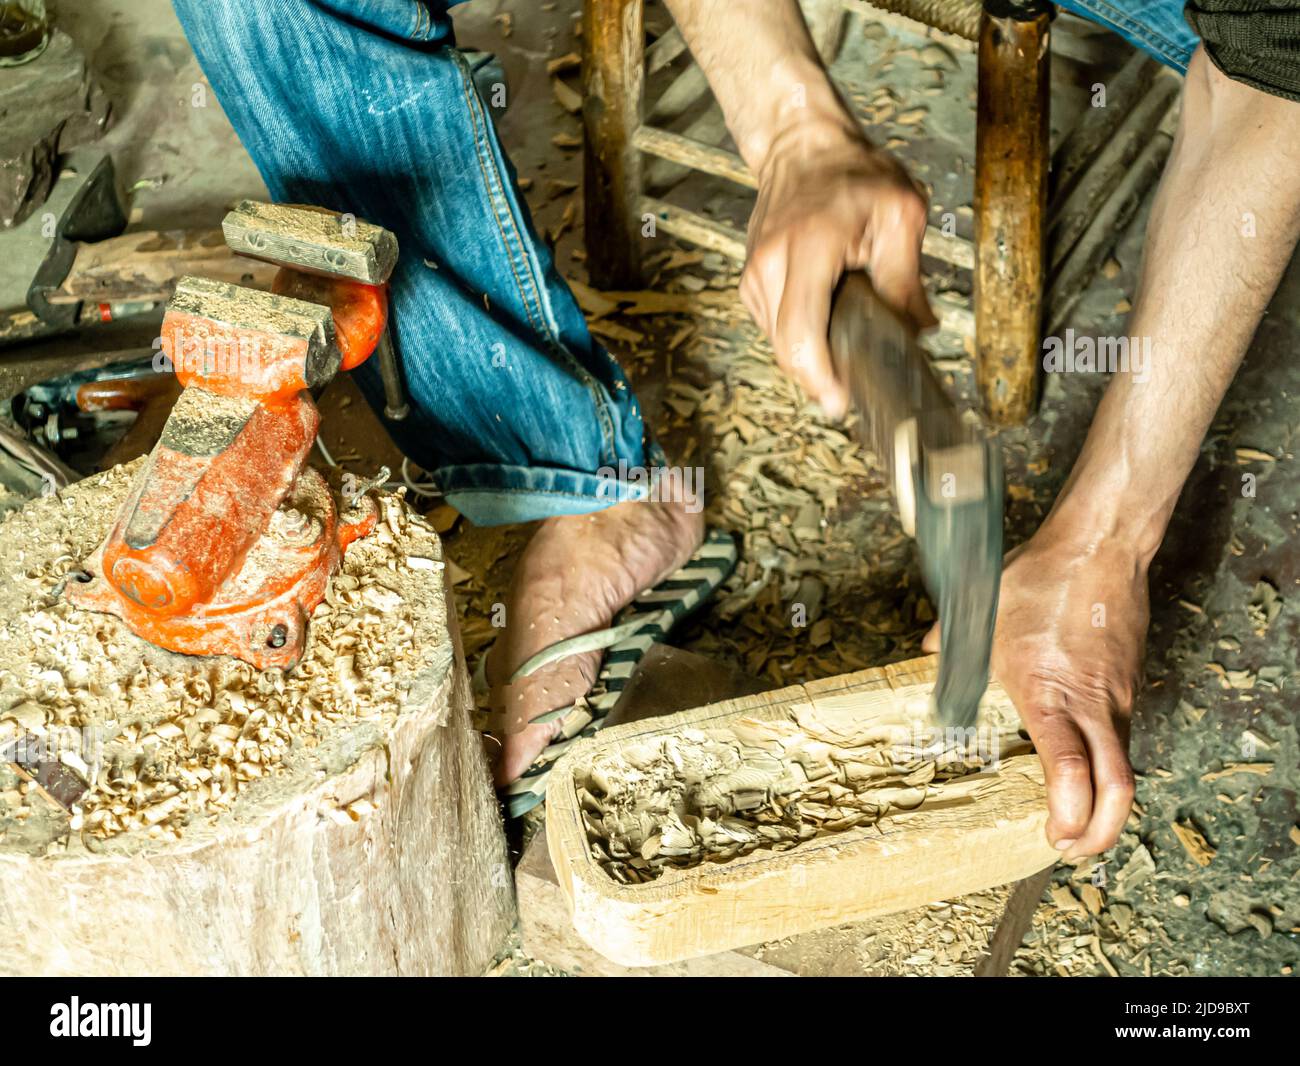 Un maître d'instrument de musique ciselant un morceau de bois utilisé comme base pour un guembri, dans son atelier. Artisans à Marrakech, Maroc, Afrique du Nord Banque D'Images